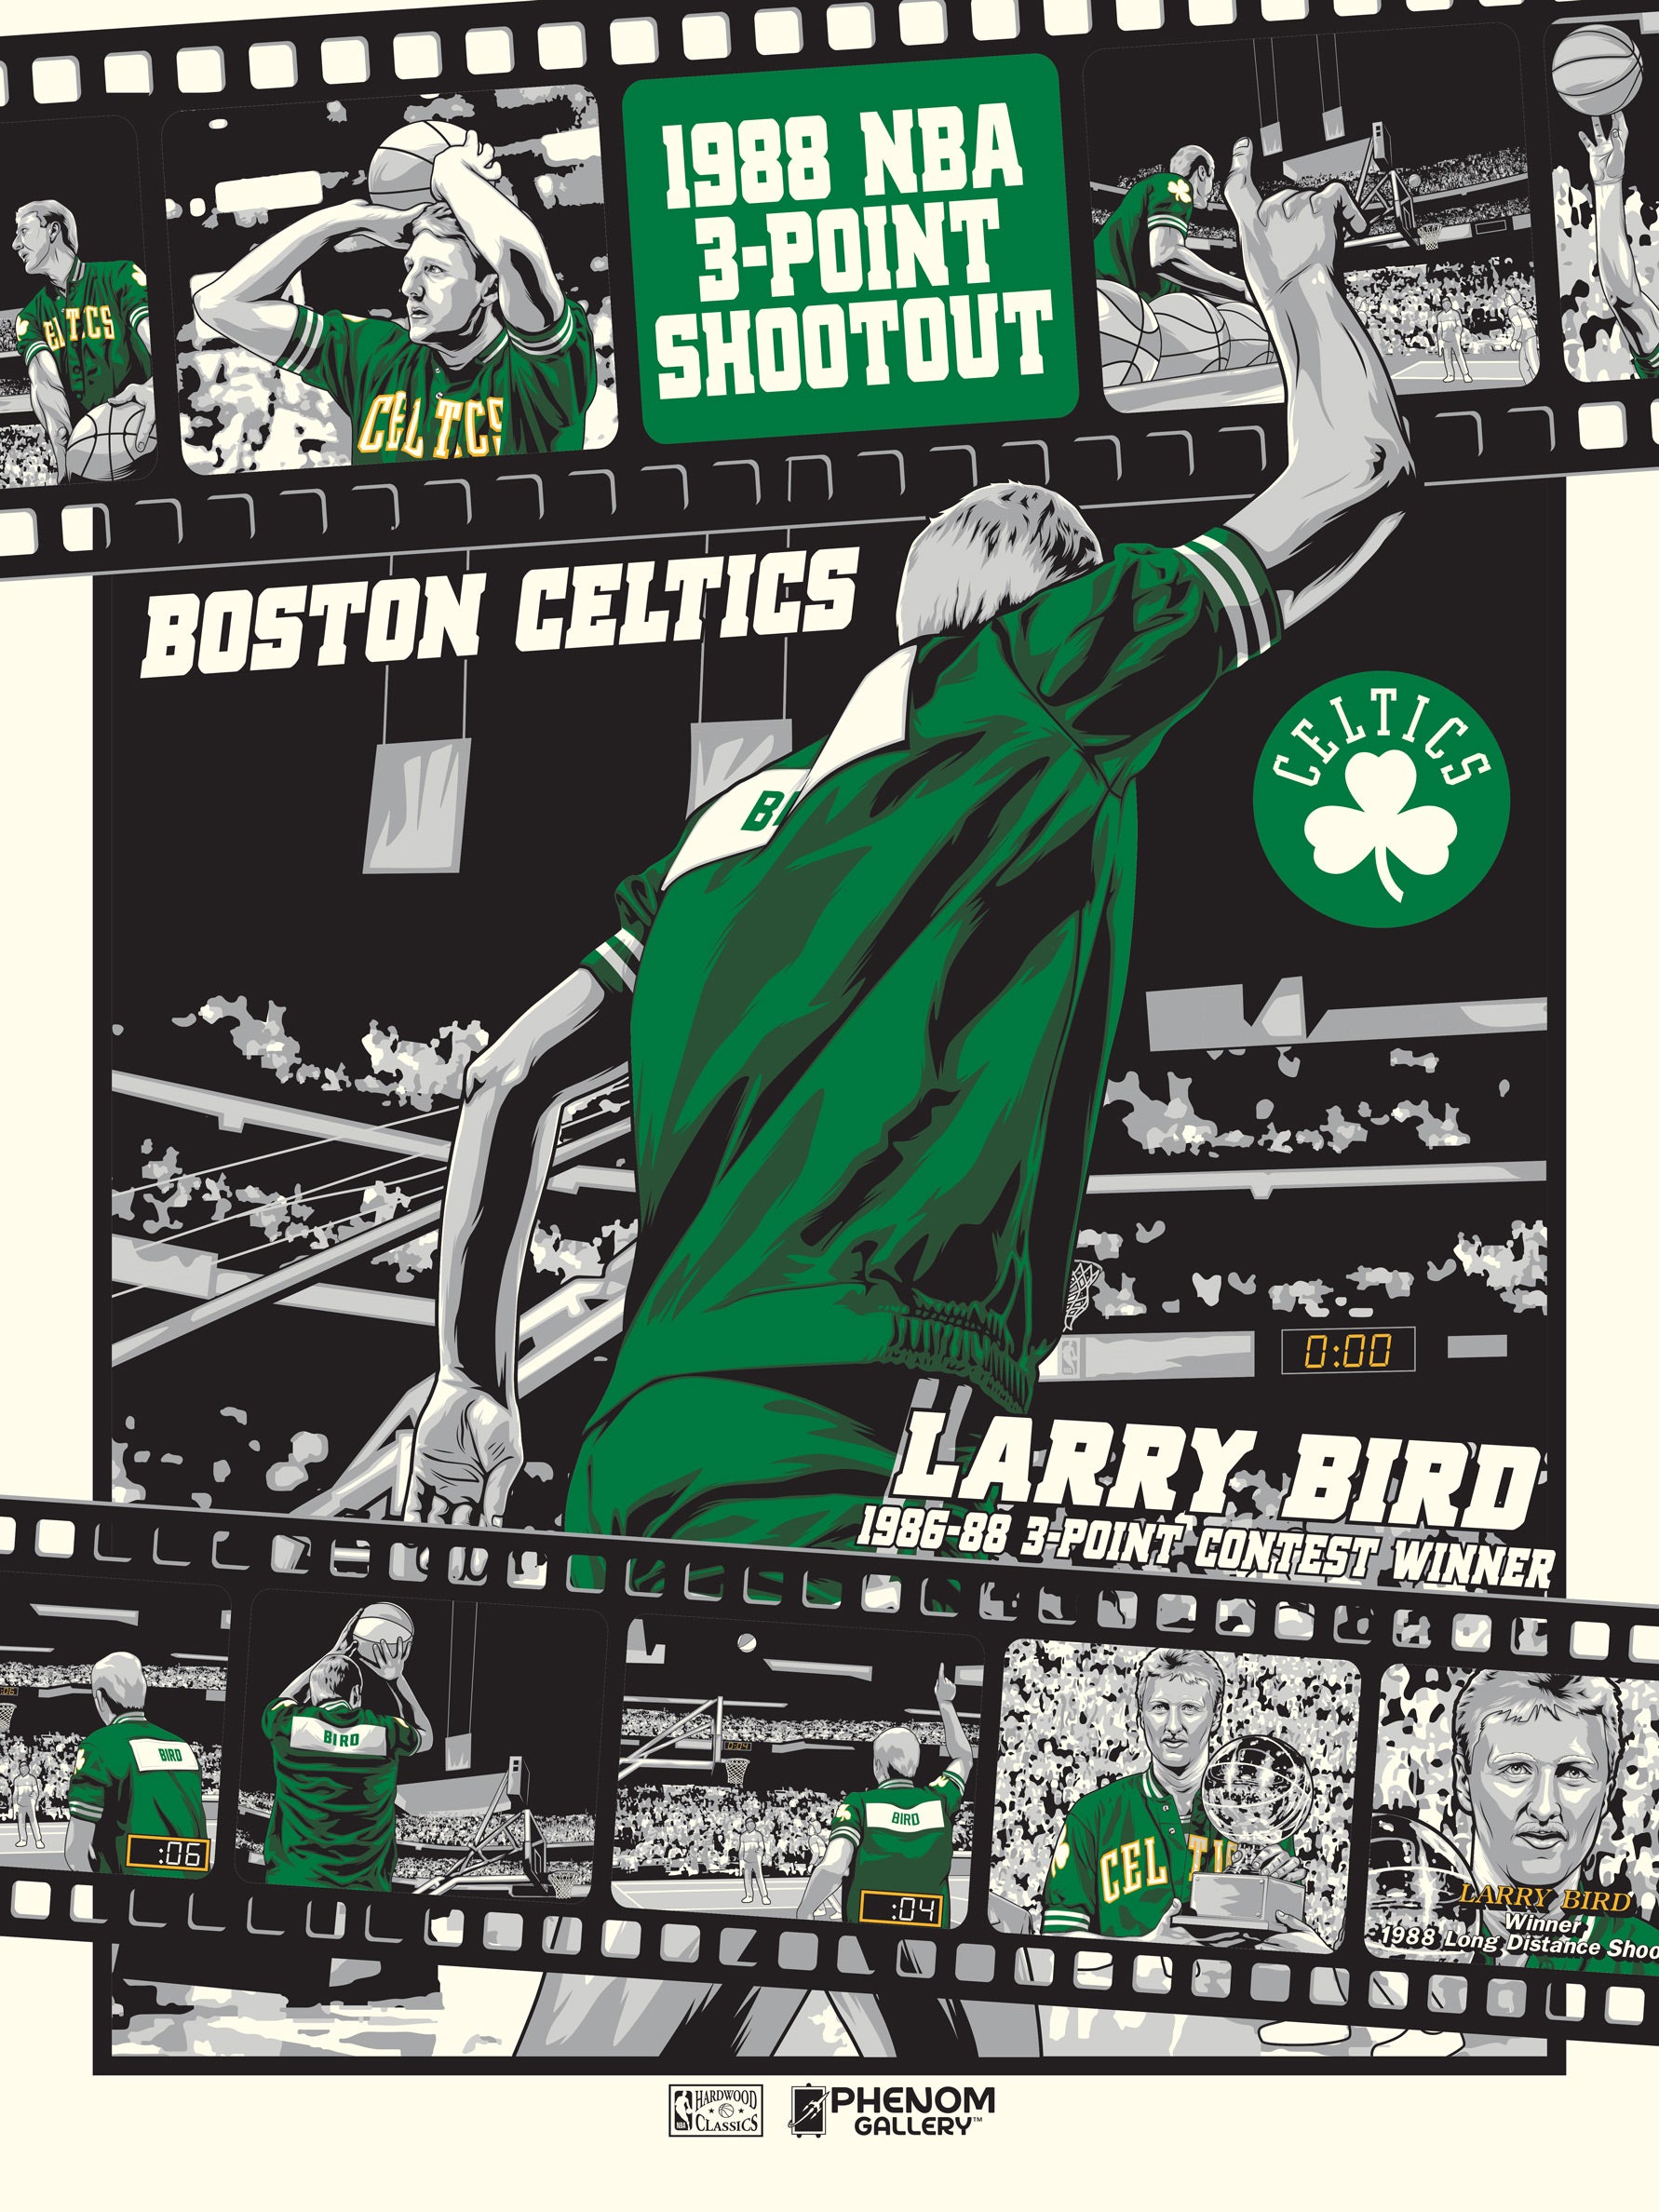 Larry Bird, Boston Celtics  _larry bird